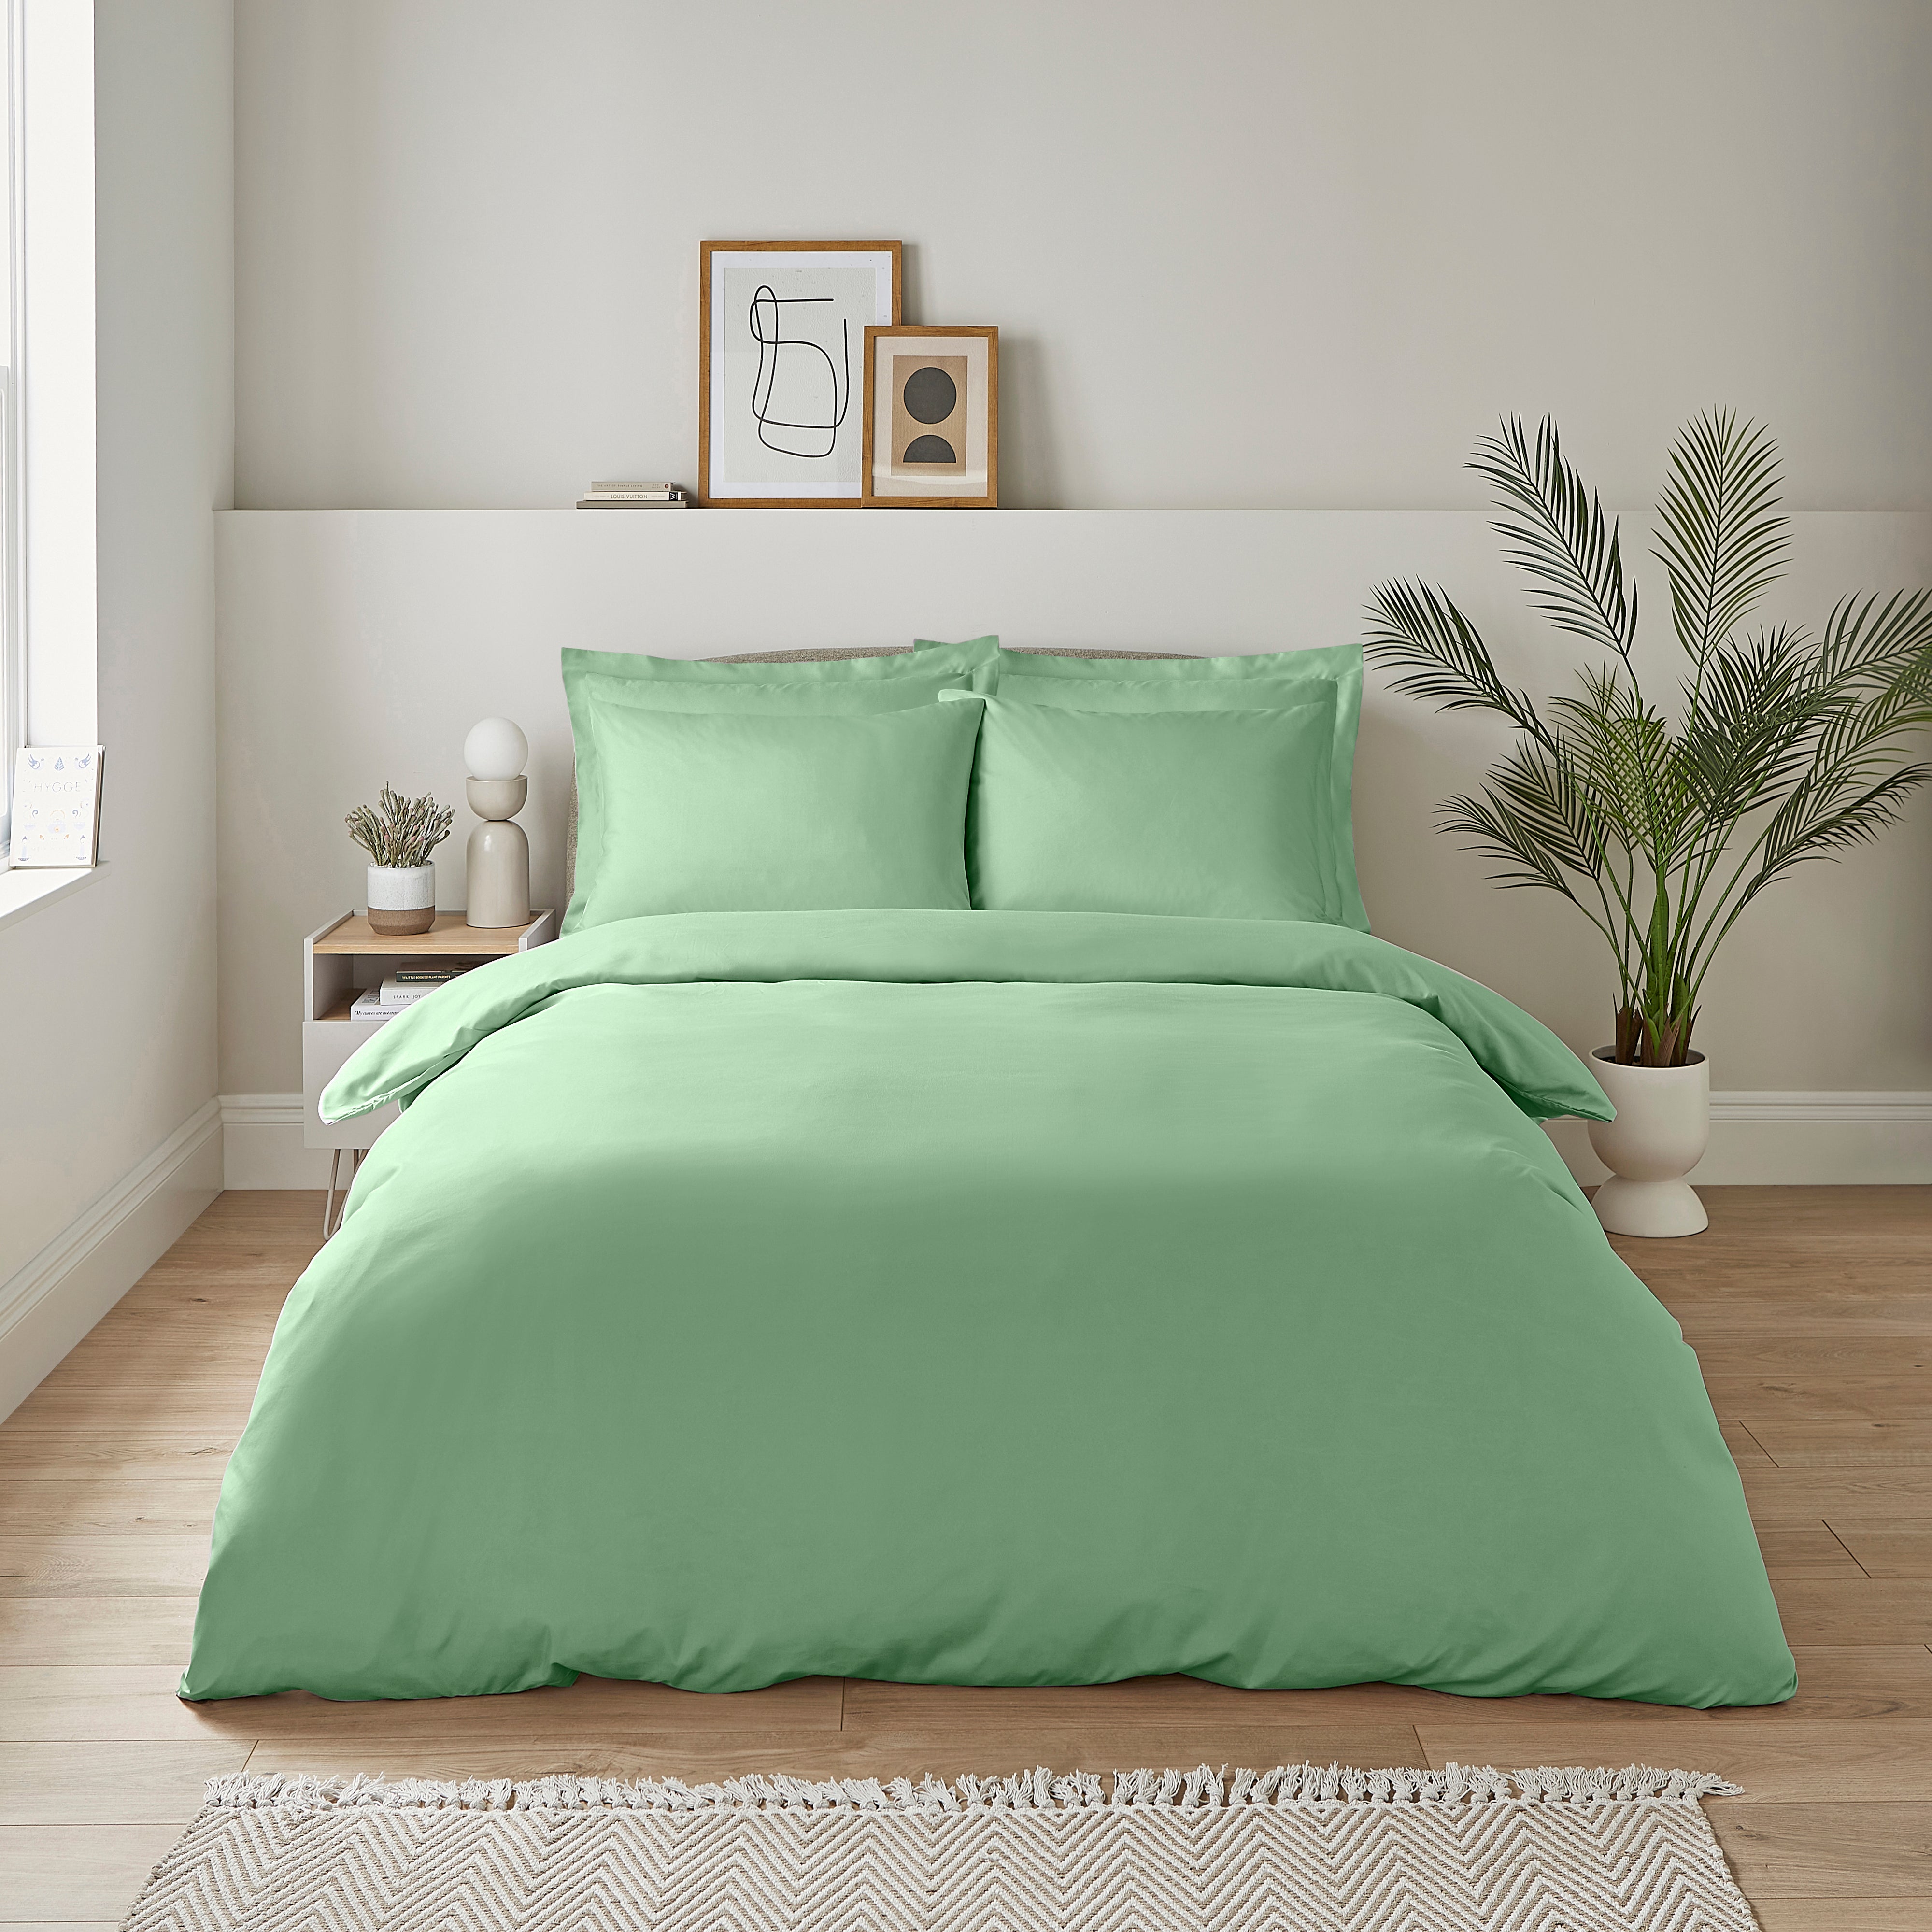 Super Soft Green Duvet Cover Pillowcase Set Green